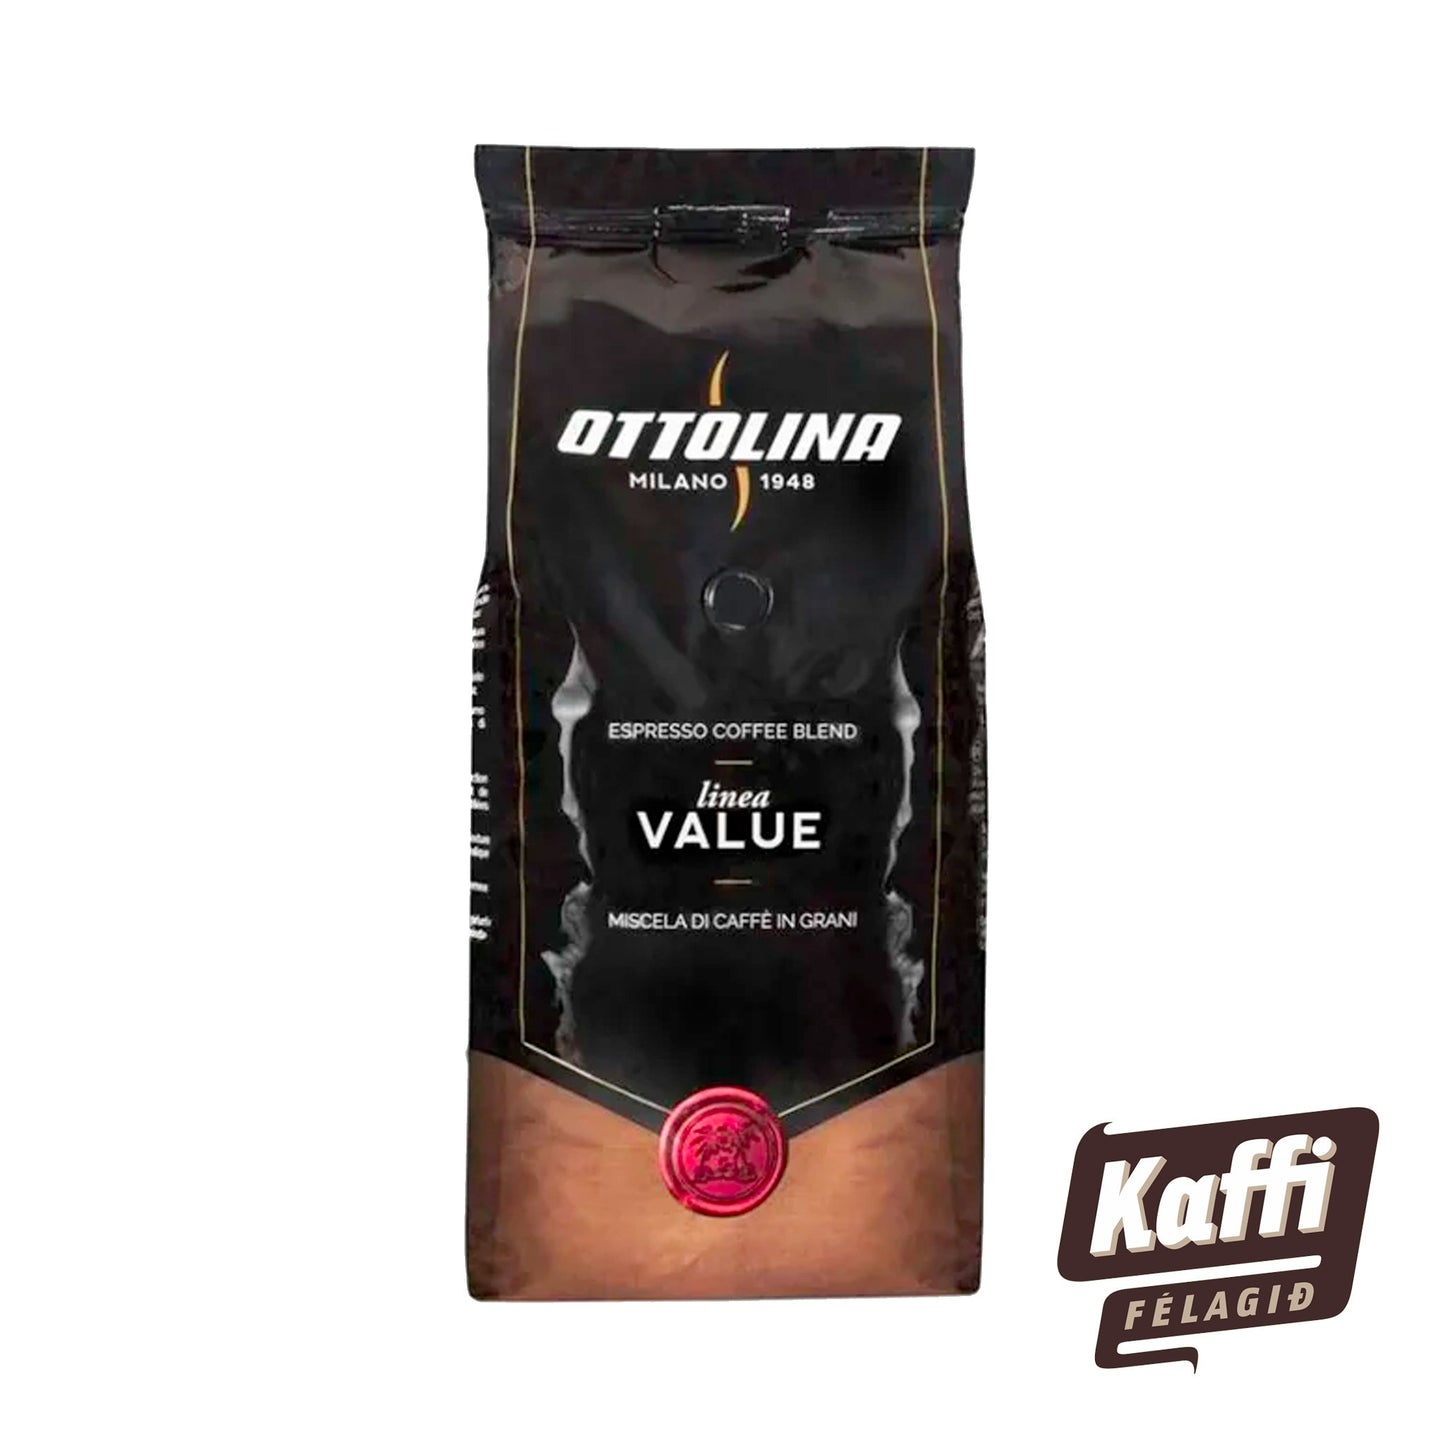 OTTOLINA - Buongiorno Coffee Beans (1000 gr.) - nammi.isKaffifélagið